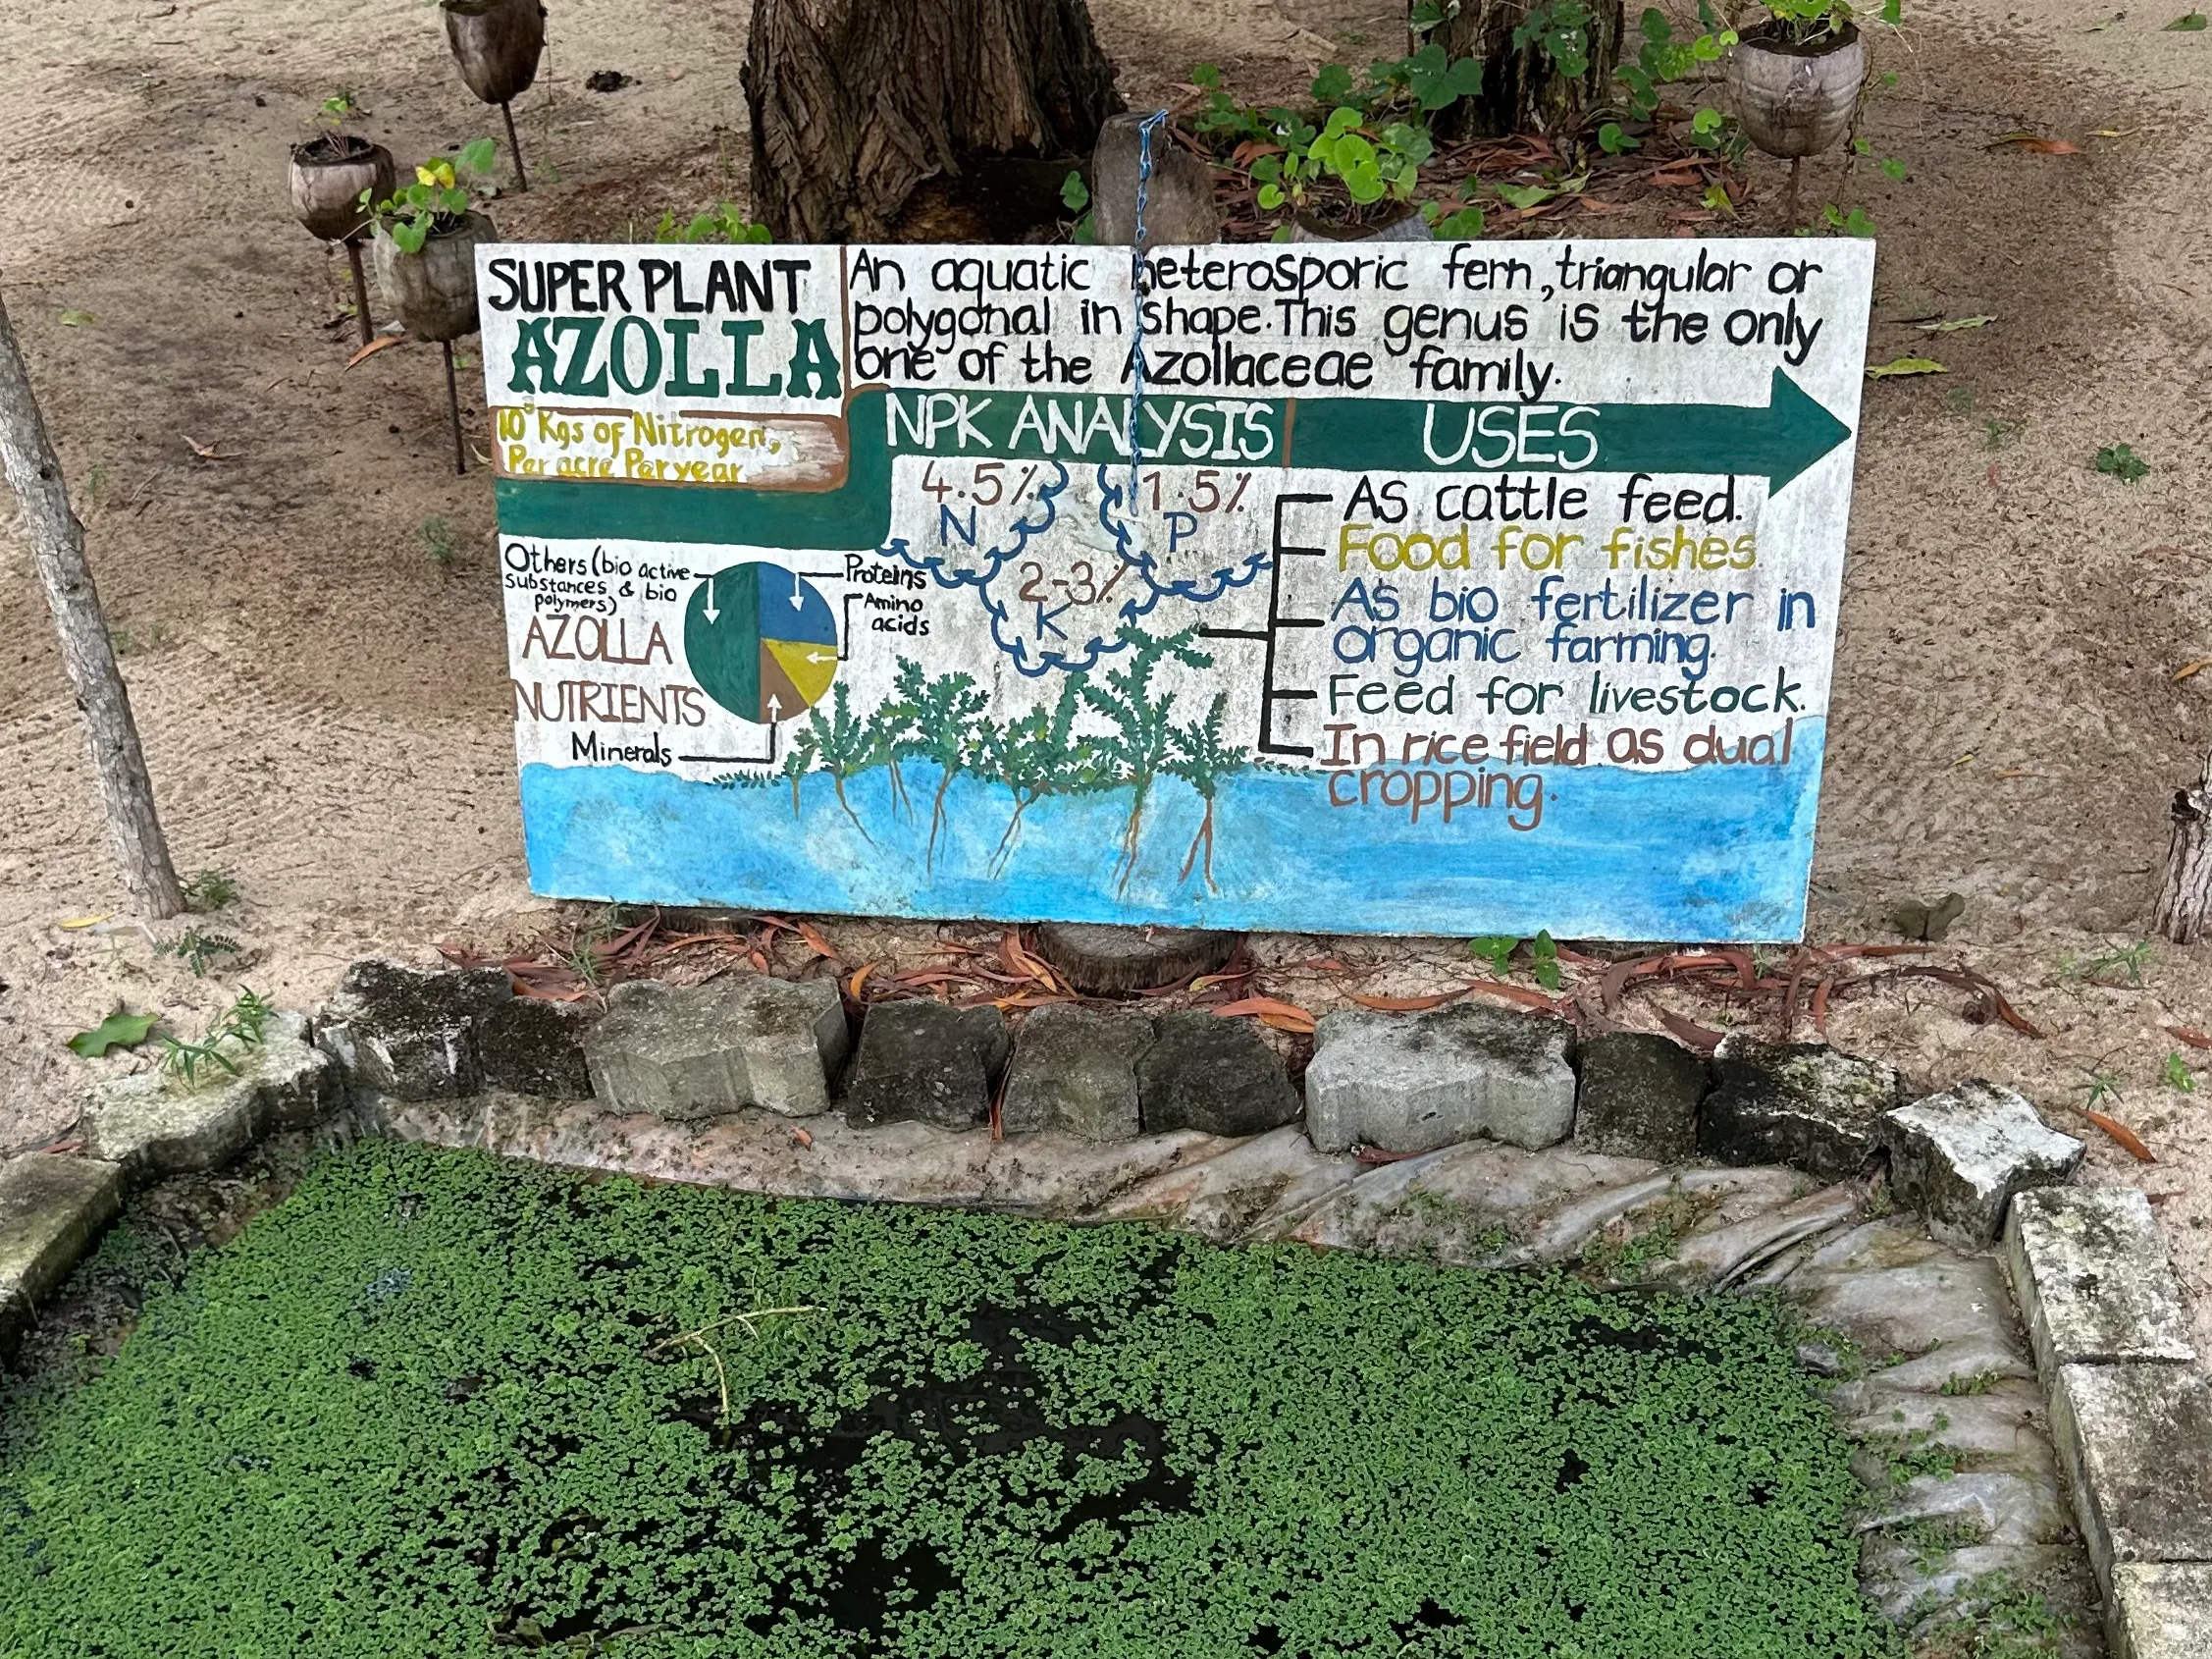 Teich mit Algenfarnen (Azolla) und Info-Tafel